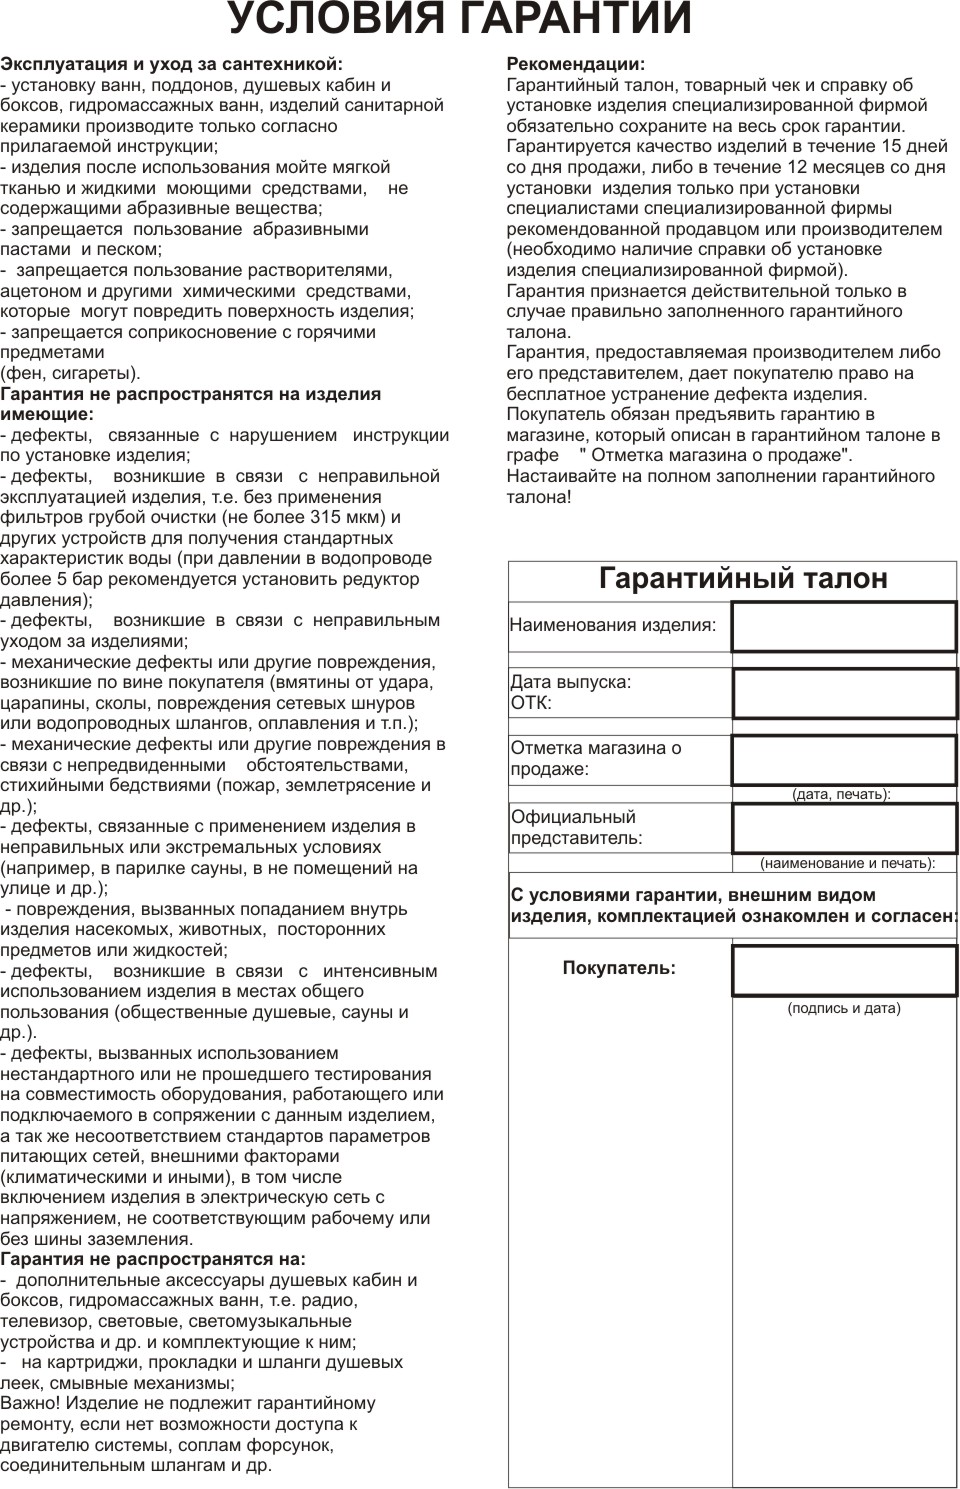 krnv-usloviya_garantii.jpg